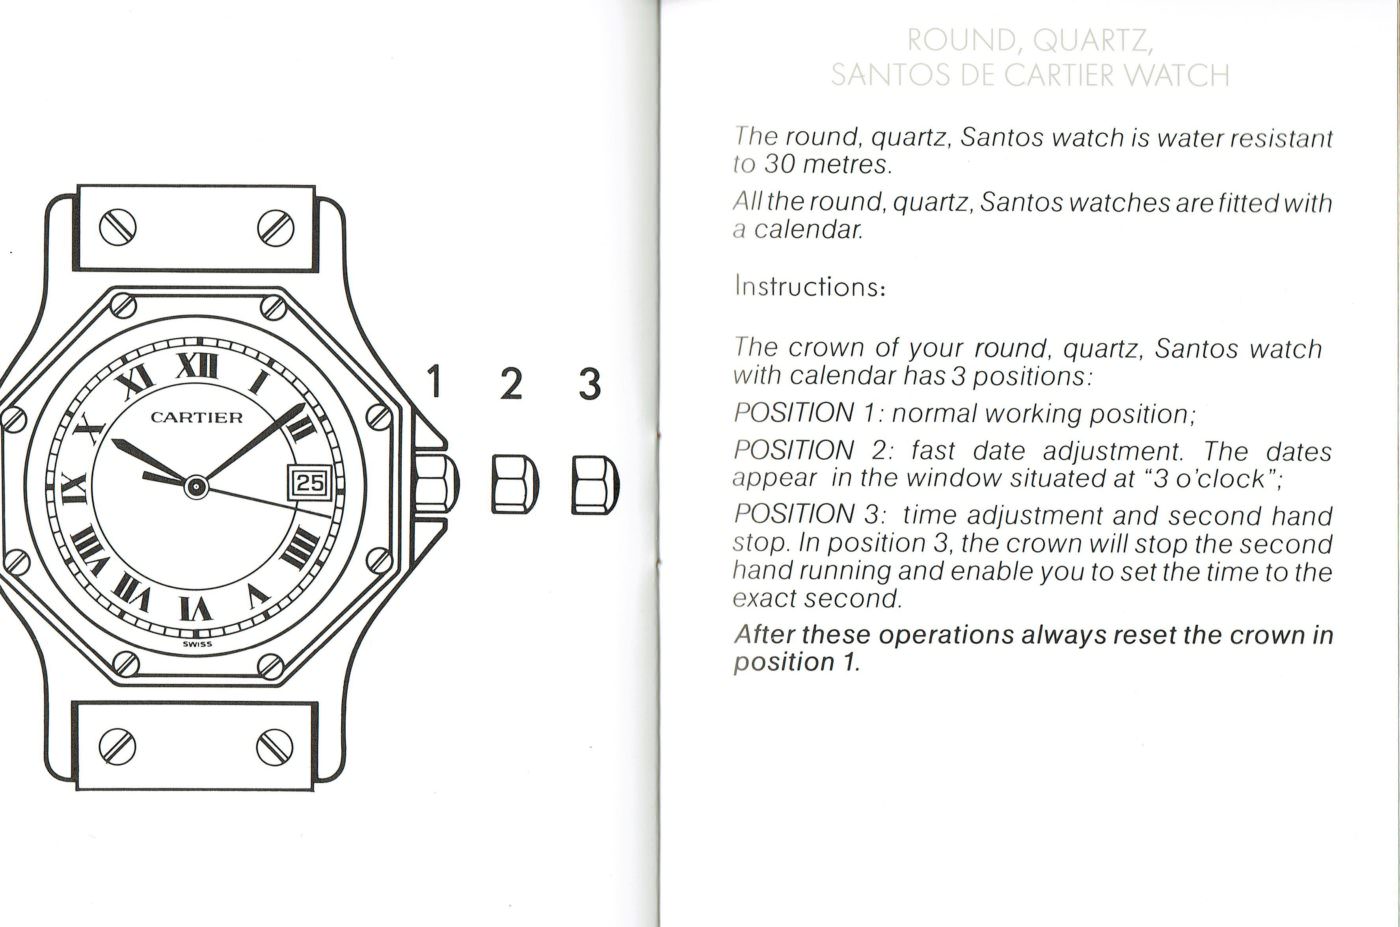 Cartier カルティエ 時計の操作マニュアル – ARBITRO